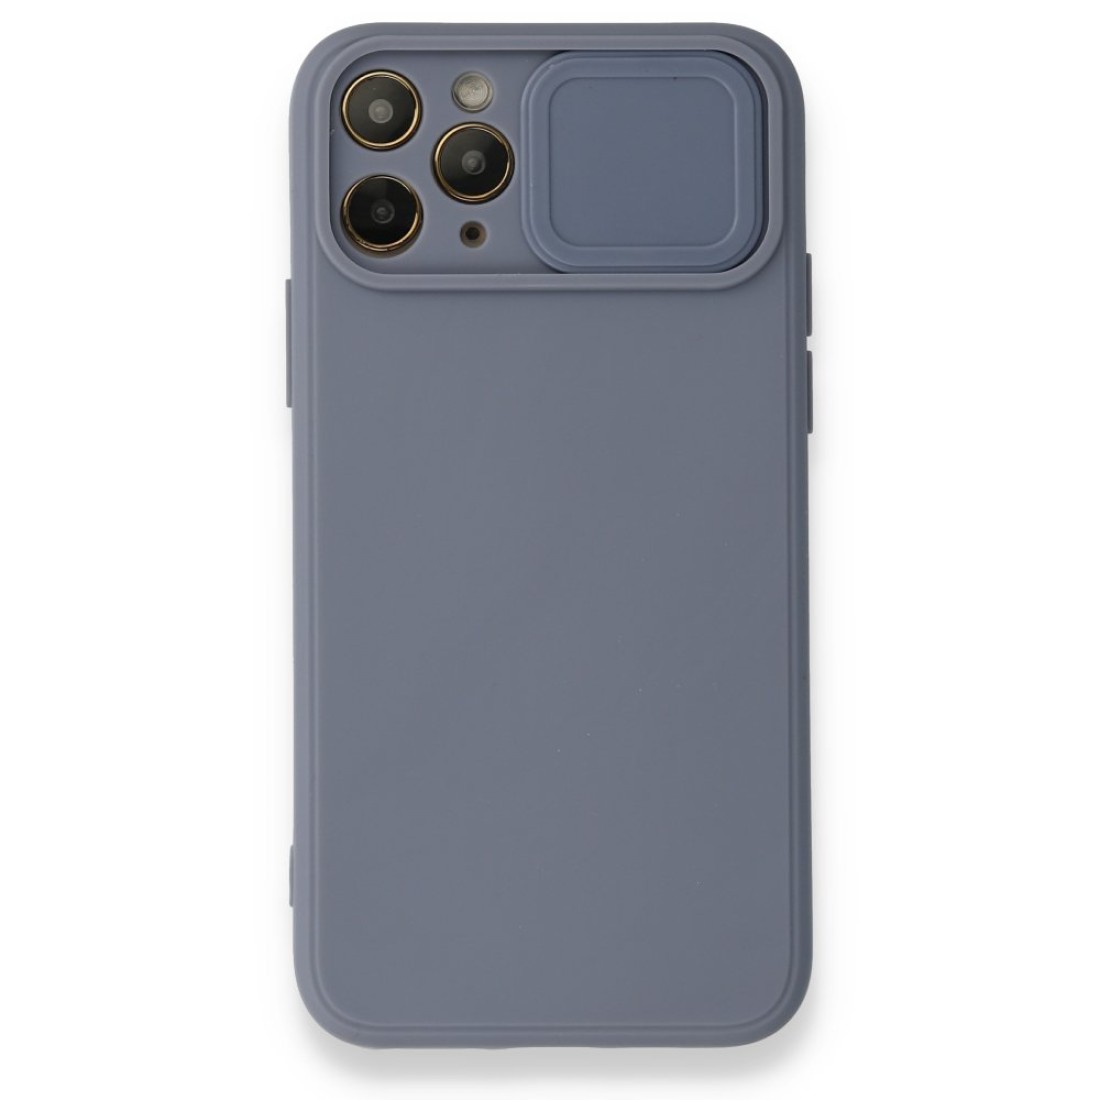 Apple iPhone 11 Pro Max Kılıf Color Lens Silikon - Gri